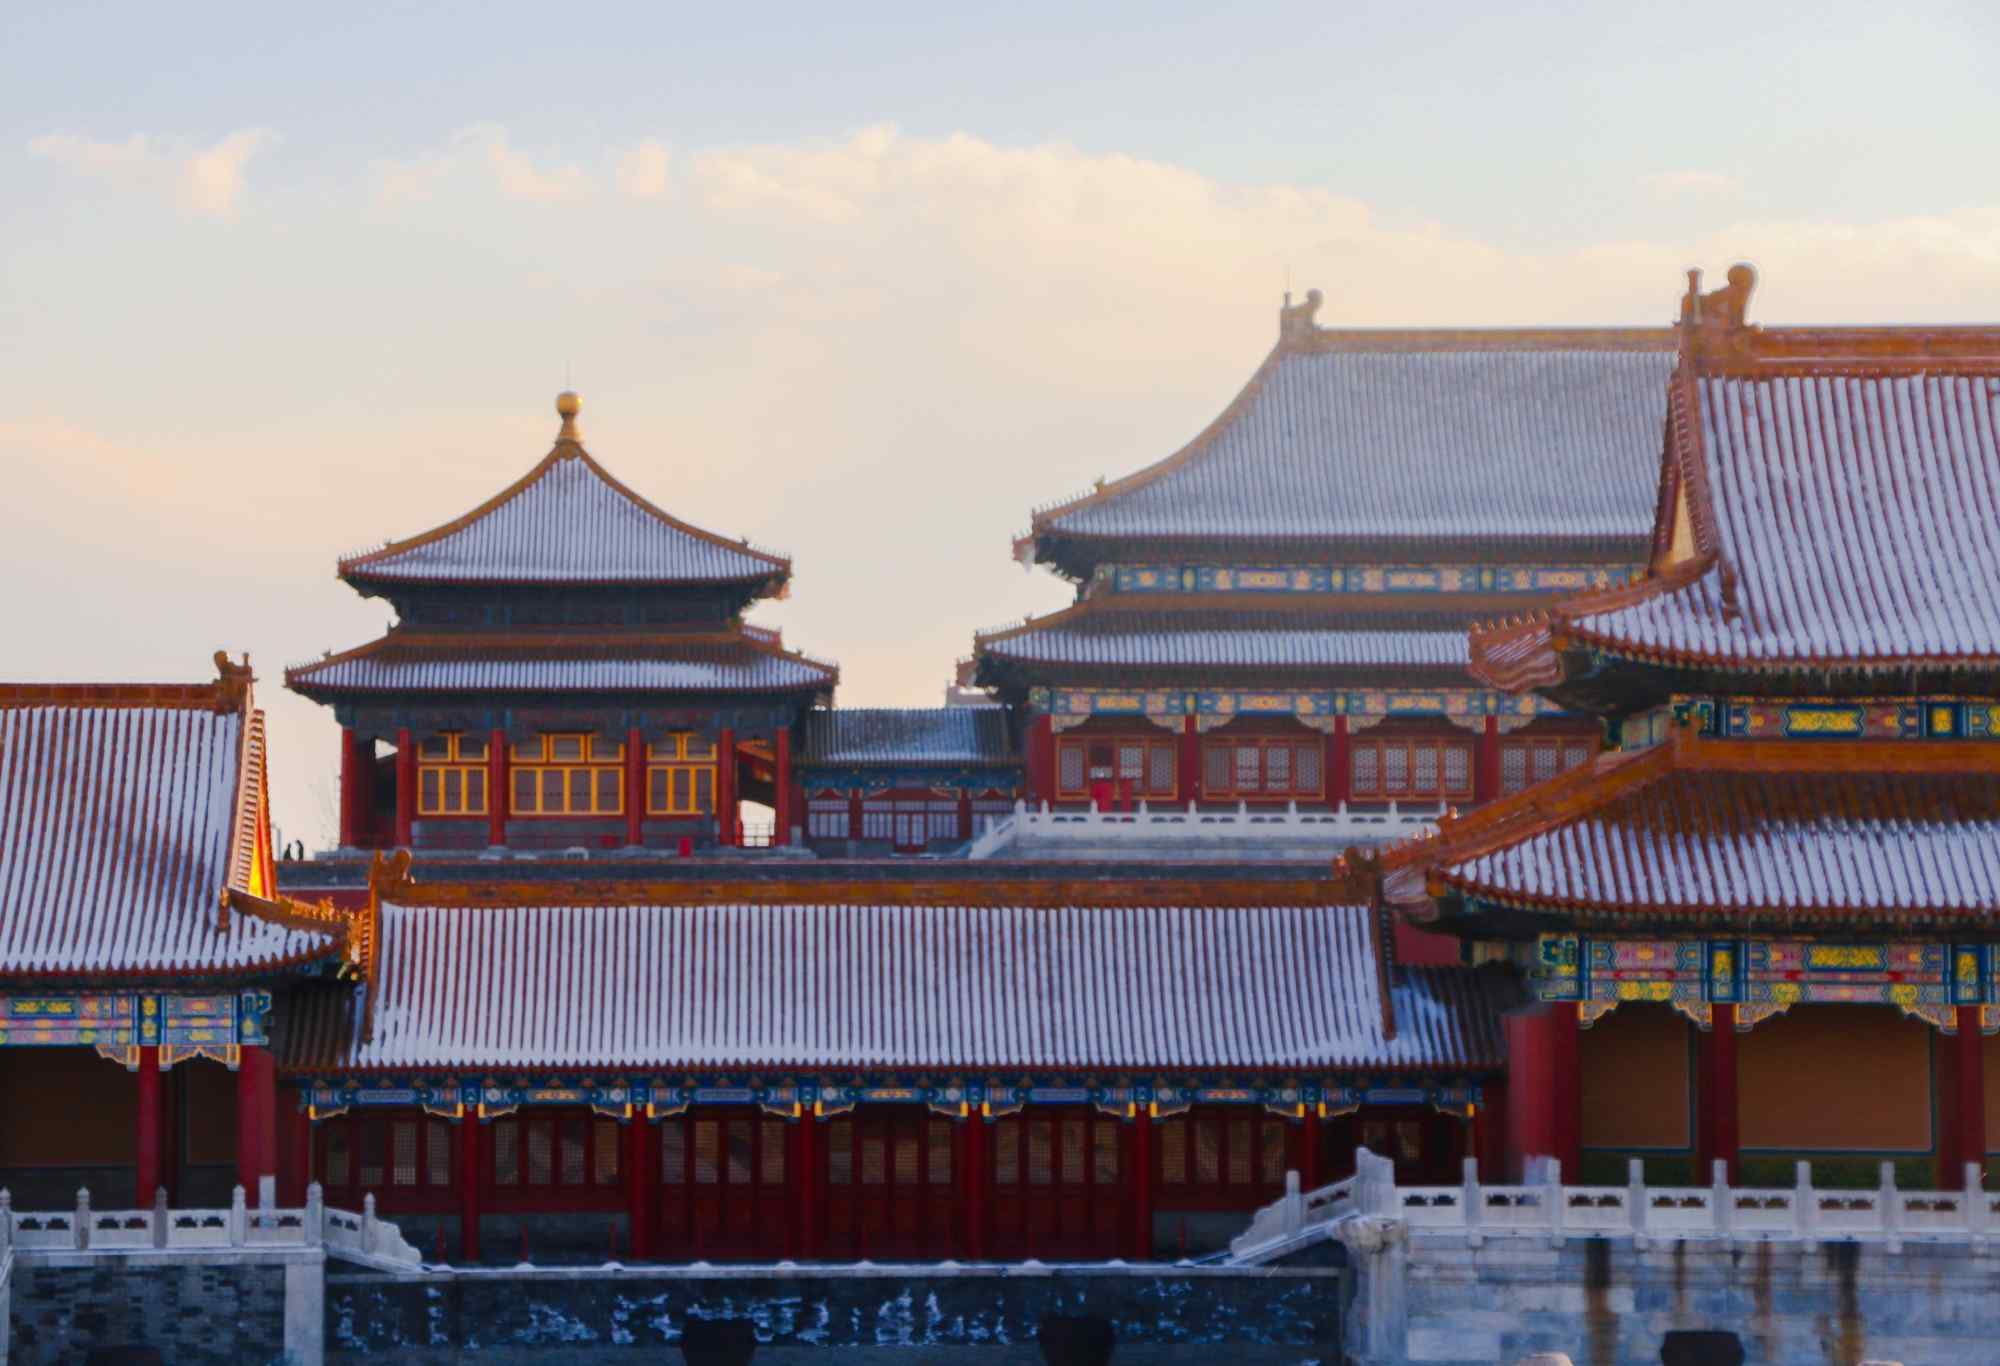 美丽故宫紫禁城雪景图片桌面壁纸